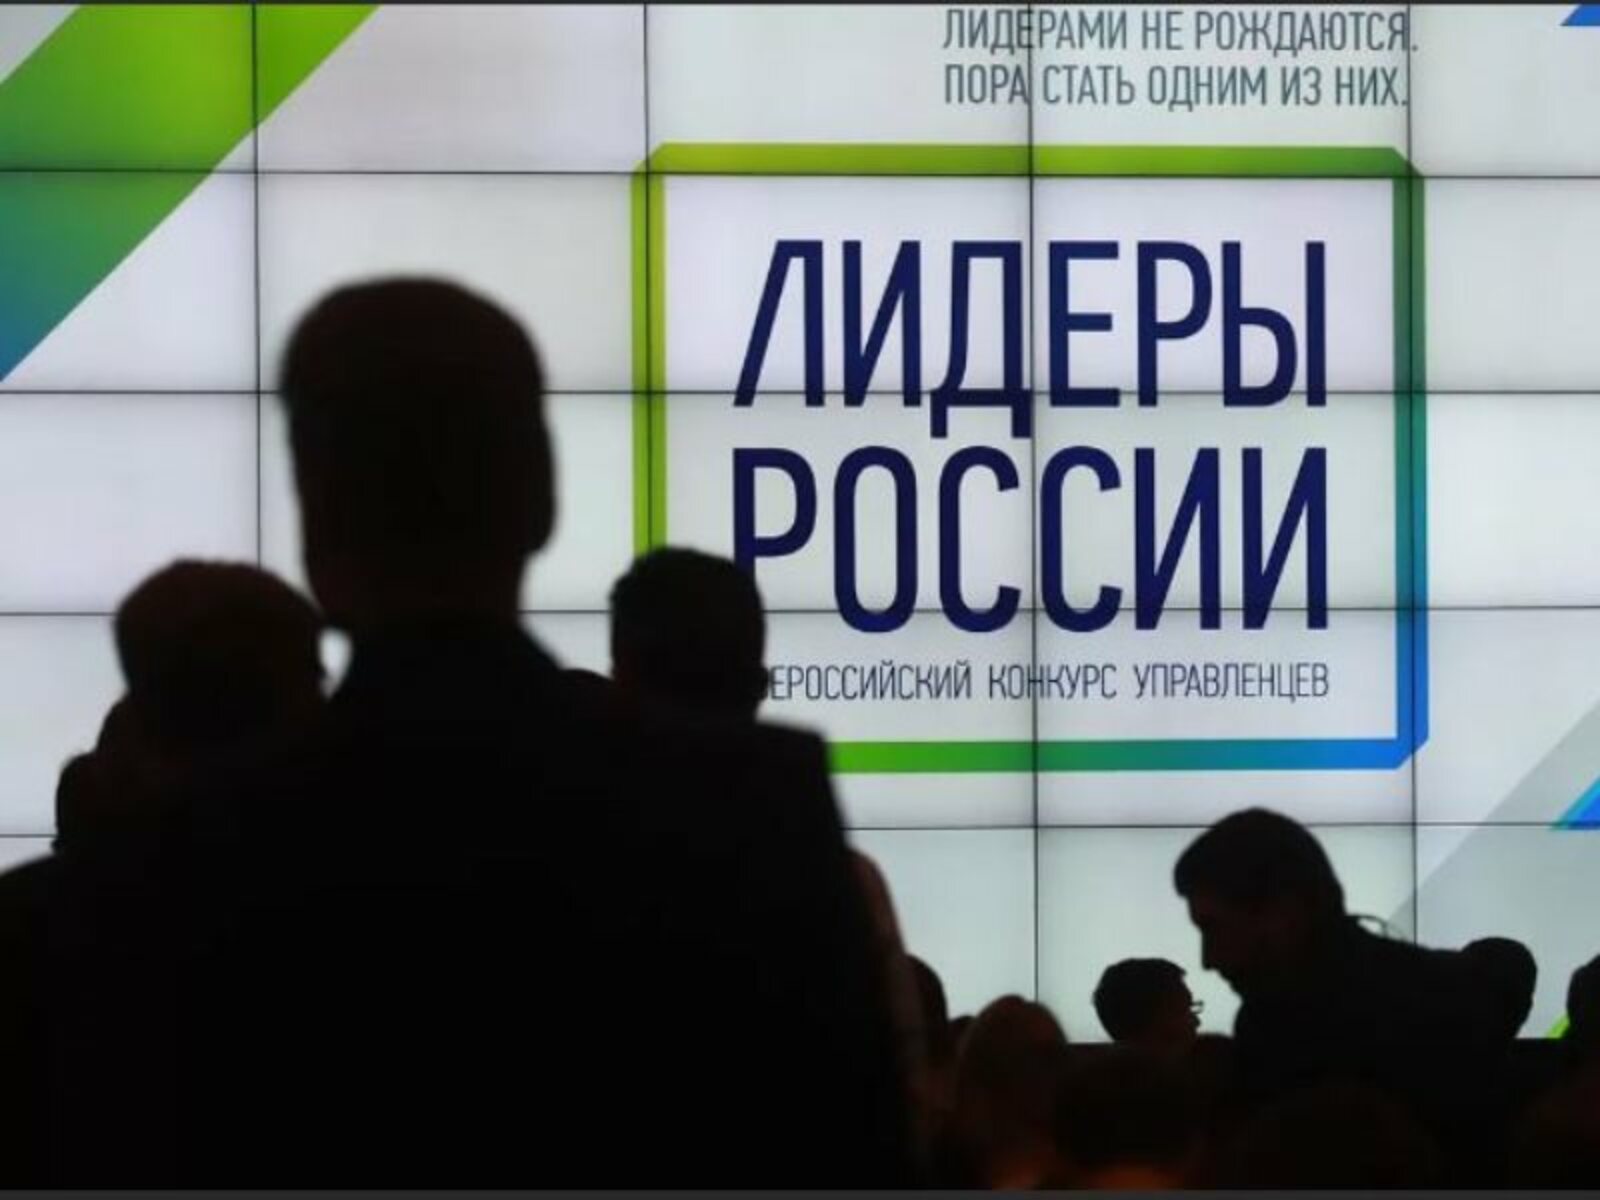 Более 40 тысяч человек подали заявки на участие в конкурсе «Лидеры России»